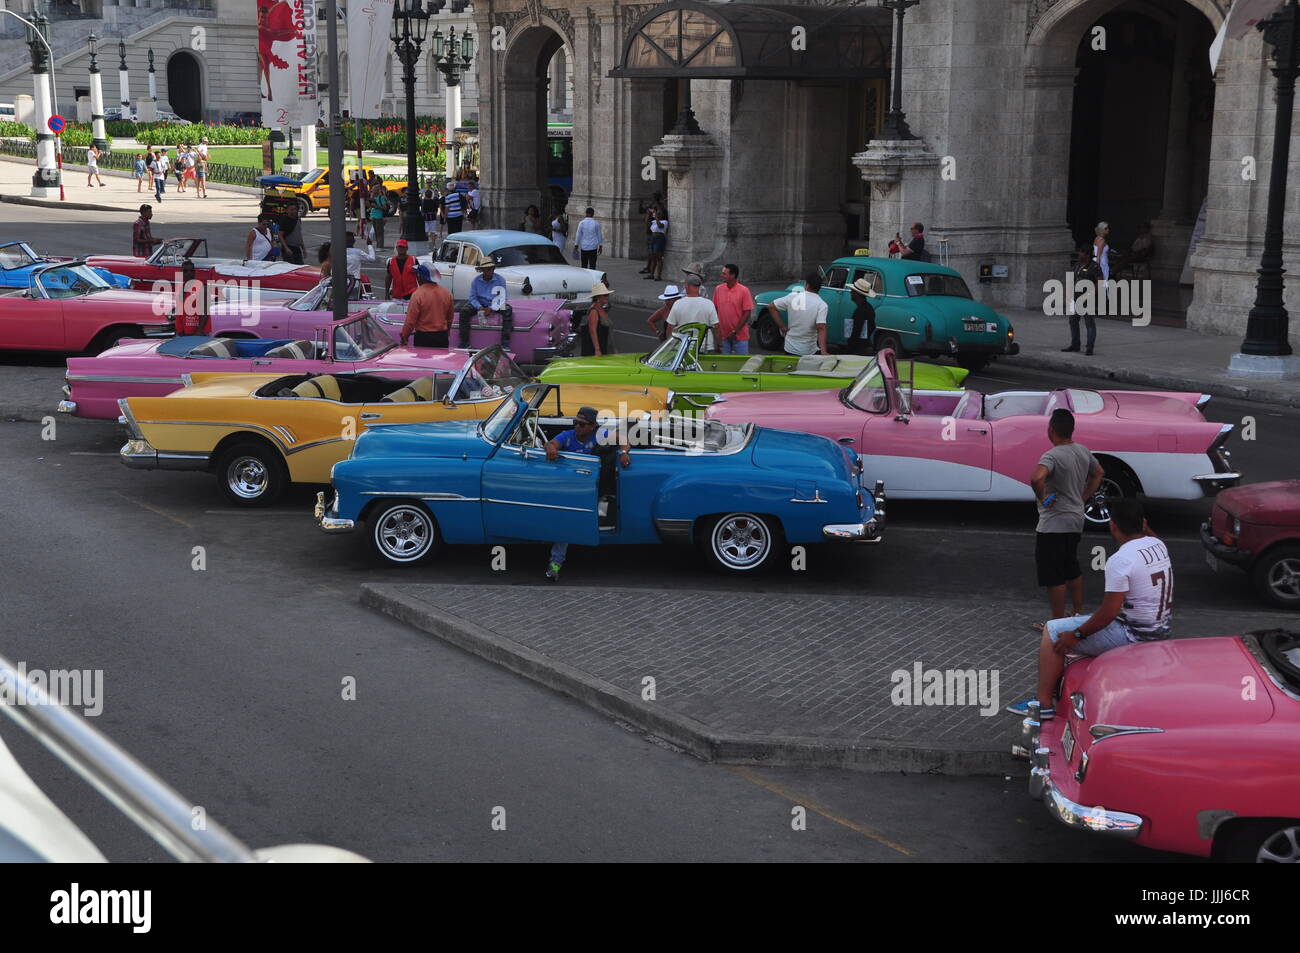 Nous Cubains colorés voitures exposées aux touristes de rouler dans lors d'une visite à La Havane (La Habana, Cuba) Banque D'Images